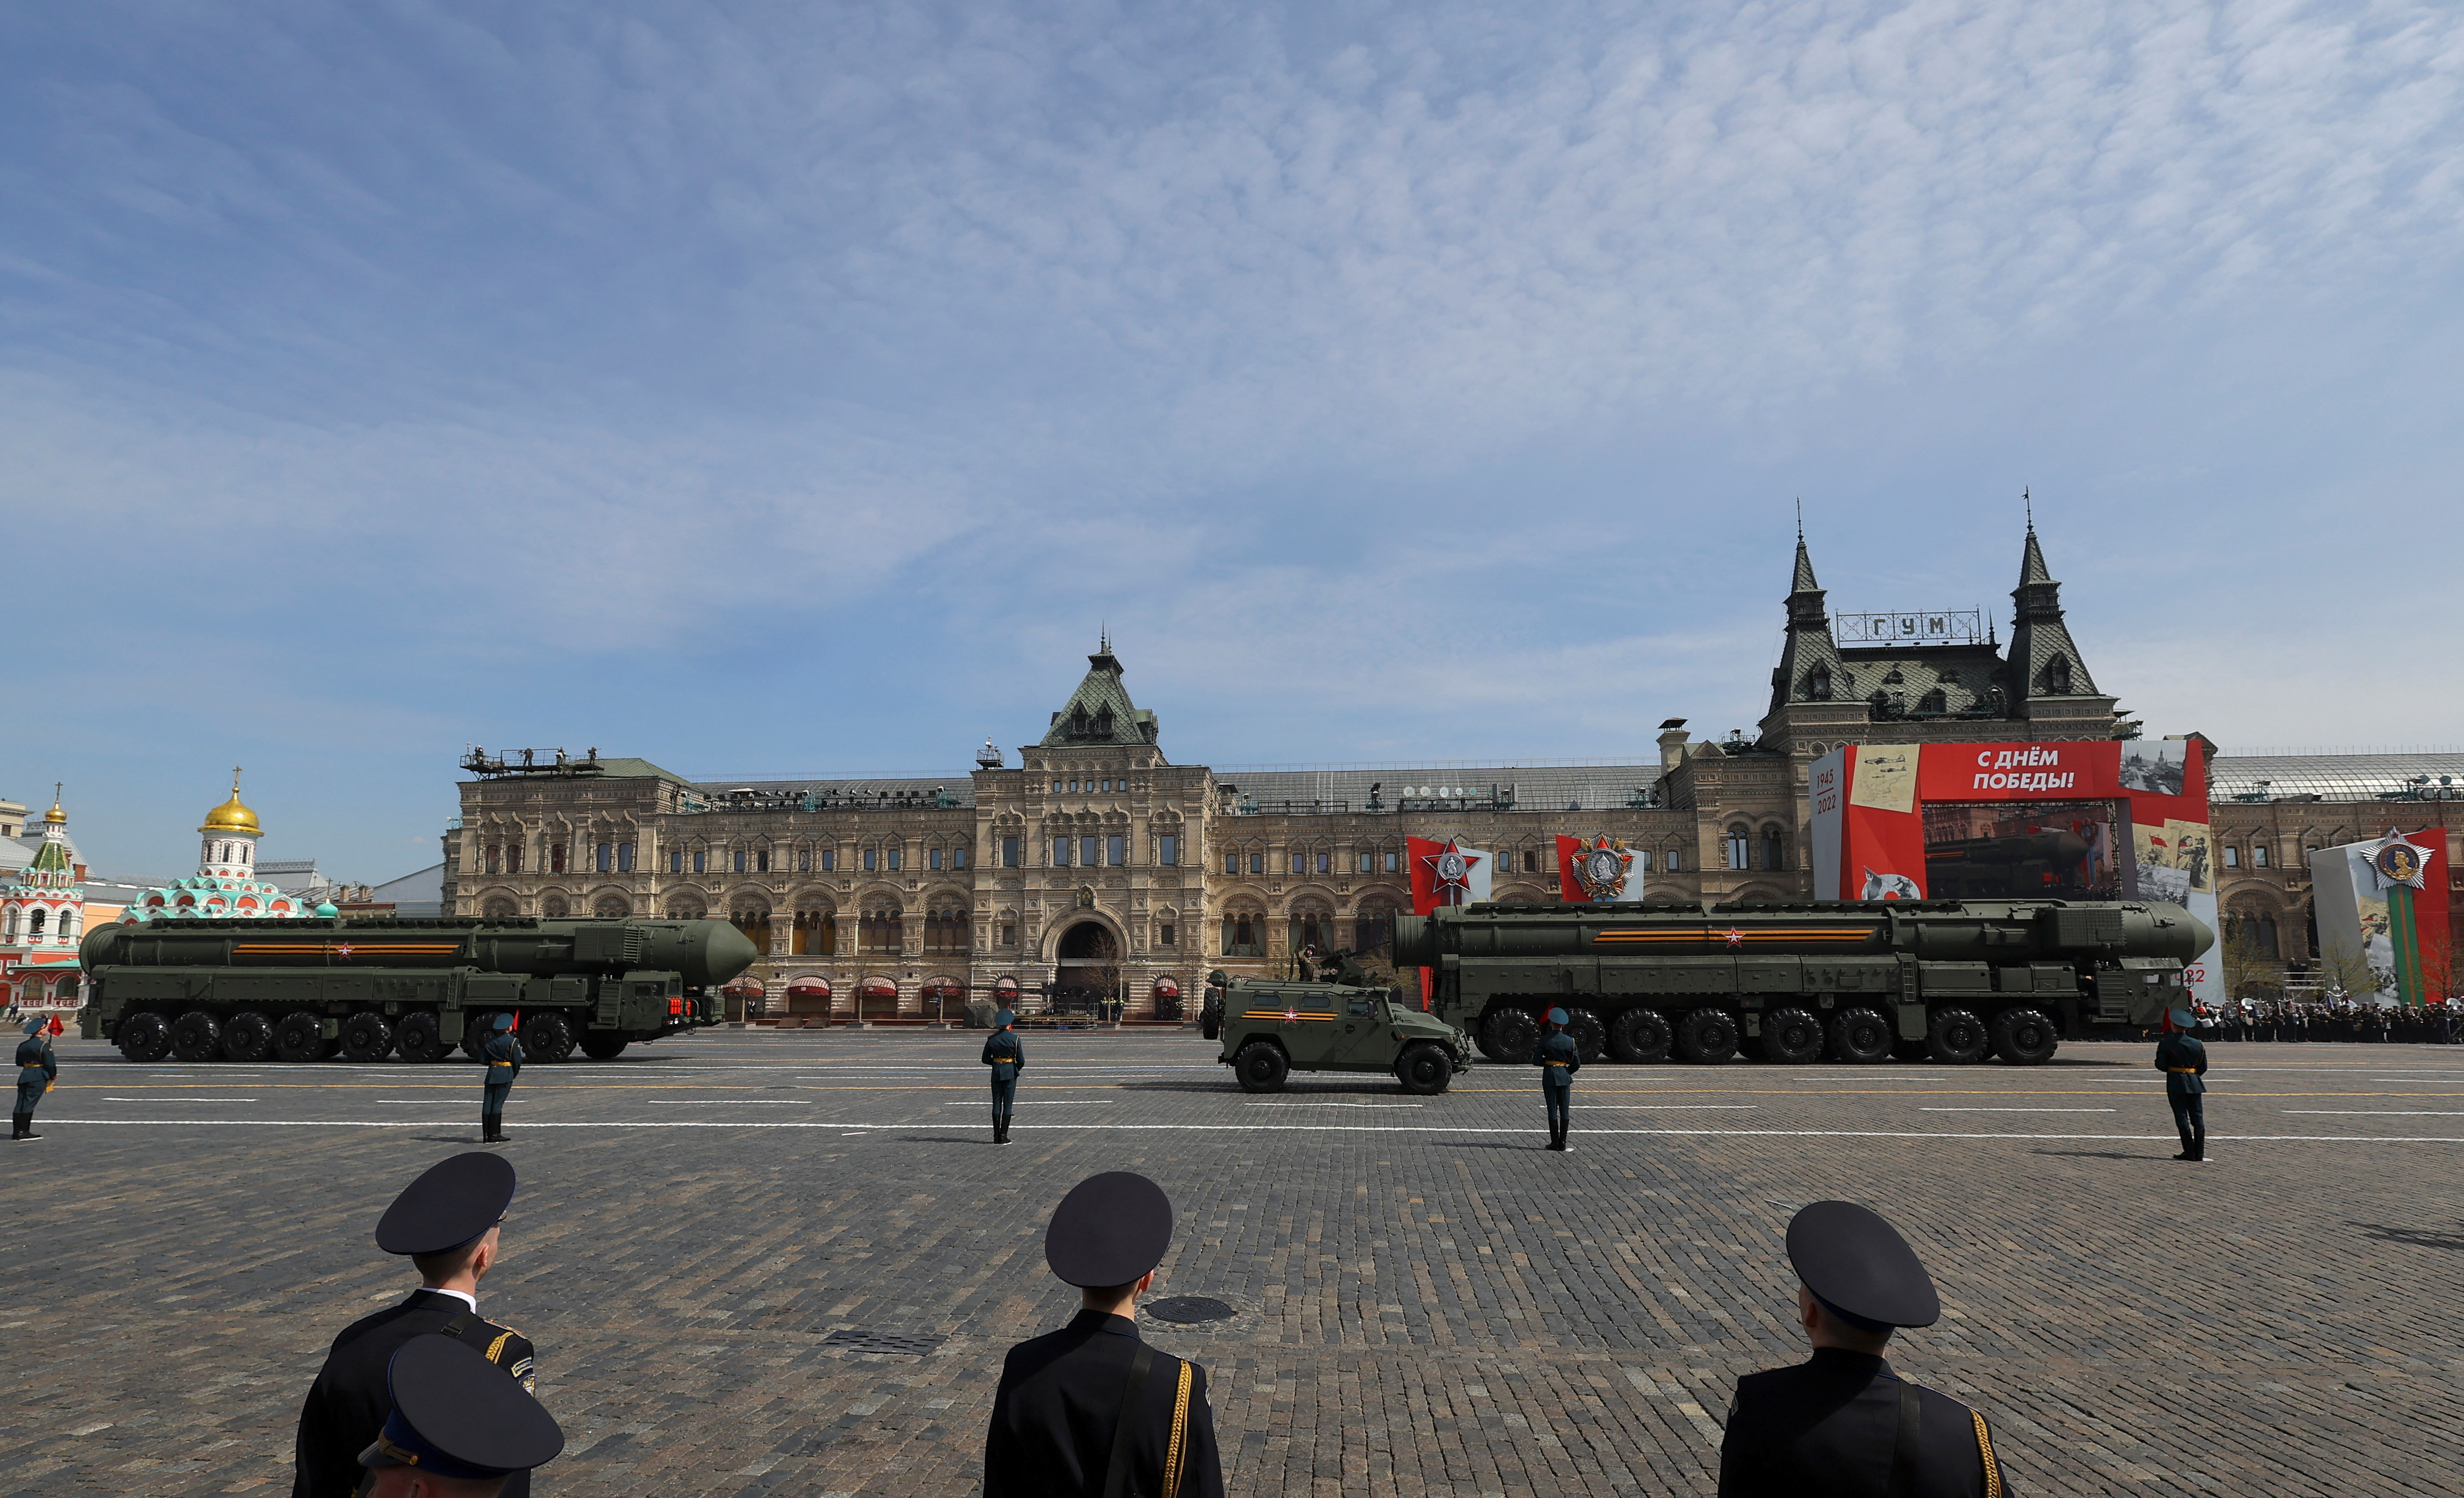 Los sistemas de misiles balísticos intercontinentales Yars rusos circulan en la Plaza Roja durante un ensayo para un desfile militar que marca el aniversario de la victoria sobre la Alemania nazi en la Segunda Guerra Mundial en el centro de Moscú, Rusia, el 7 de mayo de 2022. REUTERS/Evgenia Novozhenina